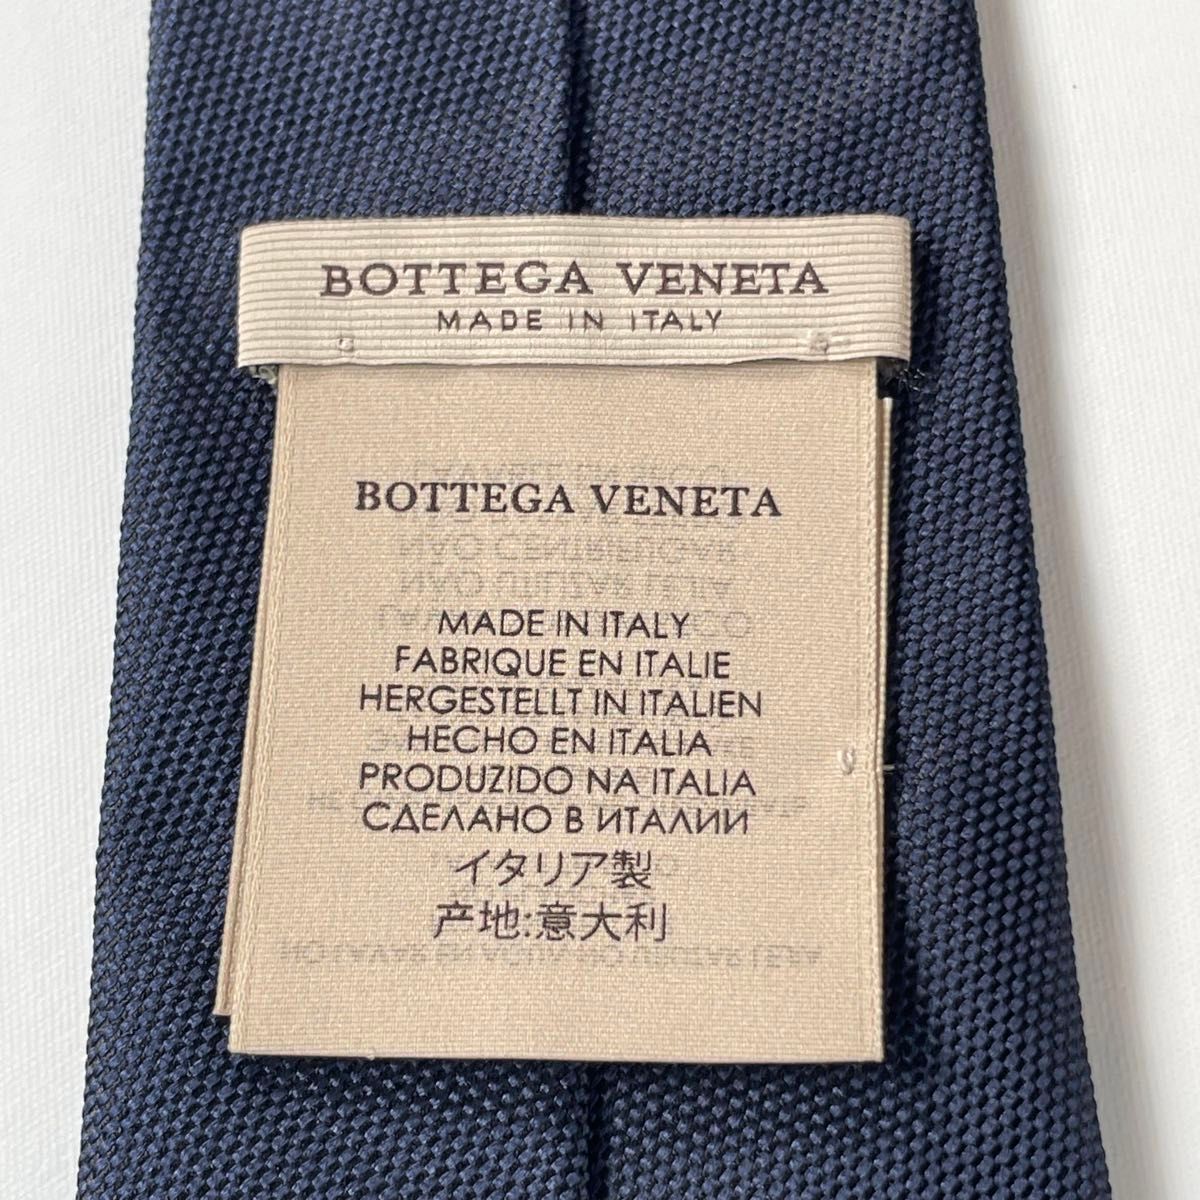 ボッテガヴェネタ(BOTTEGA VENETA) ネクタイ 無地 ソリッド 紺 ネイビー 大剣幅 7.5cm イタリア製 シルク